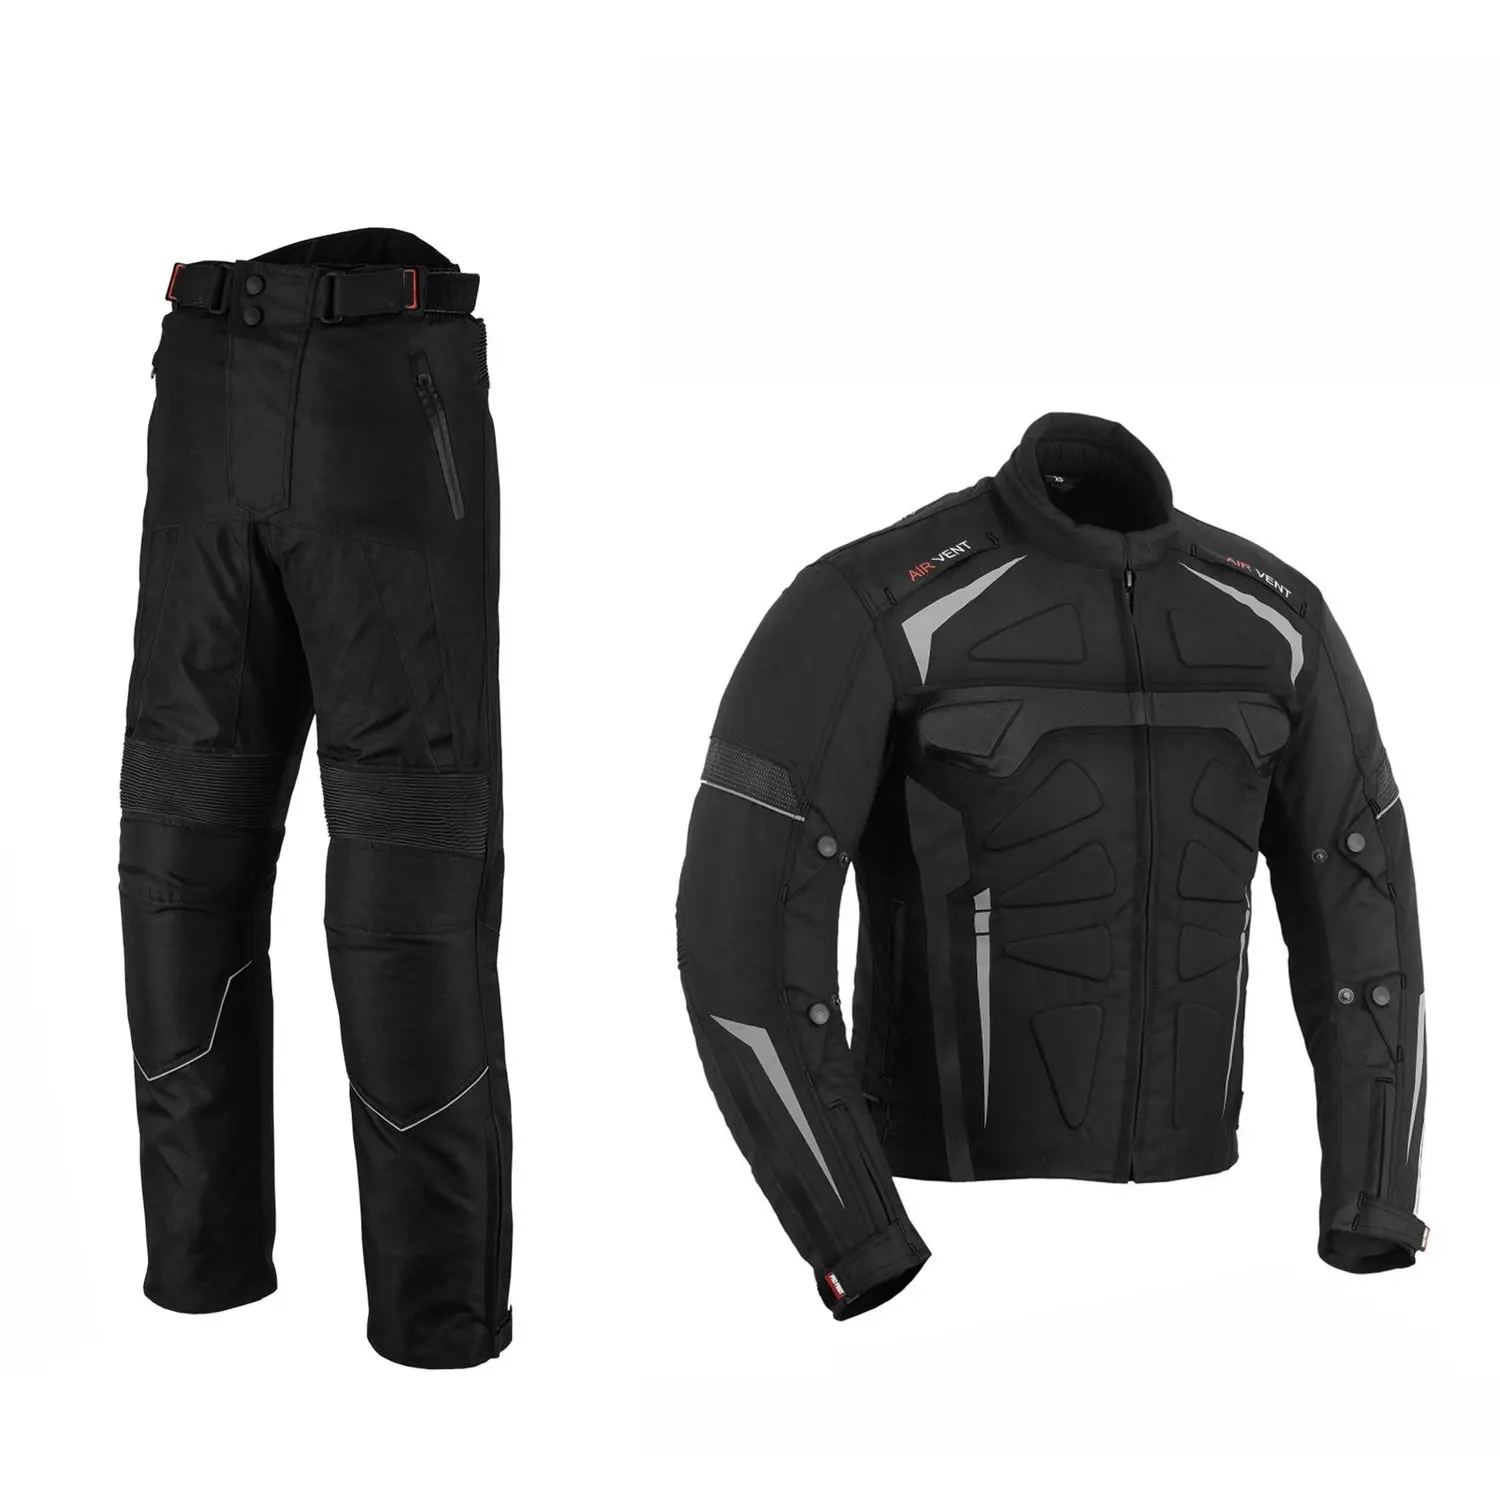 Veste et pantalon de moto 2 pièces, combinaison thermique en Textile Cordura, costume de course de moto, costume de tous les temps